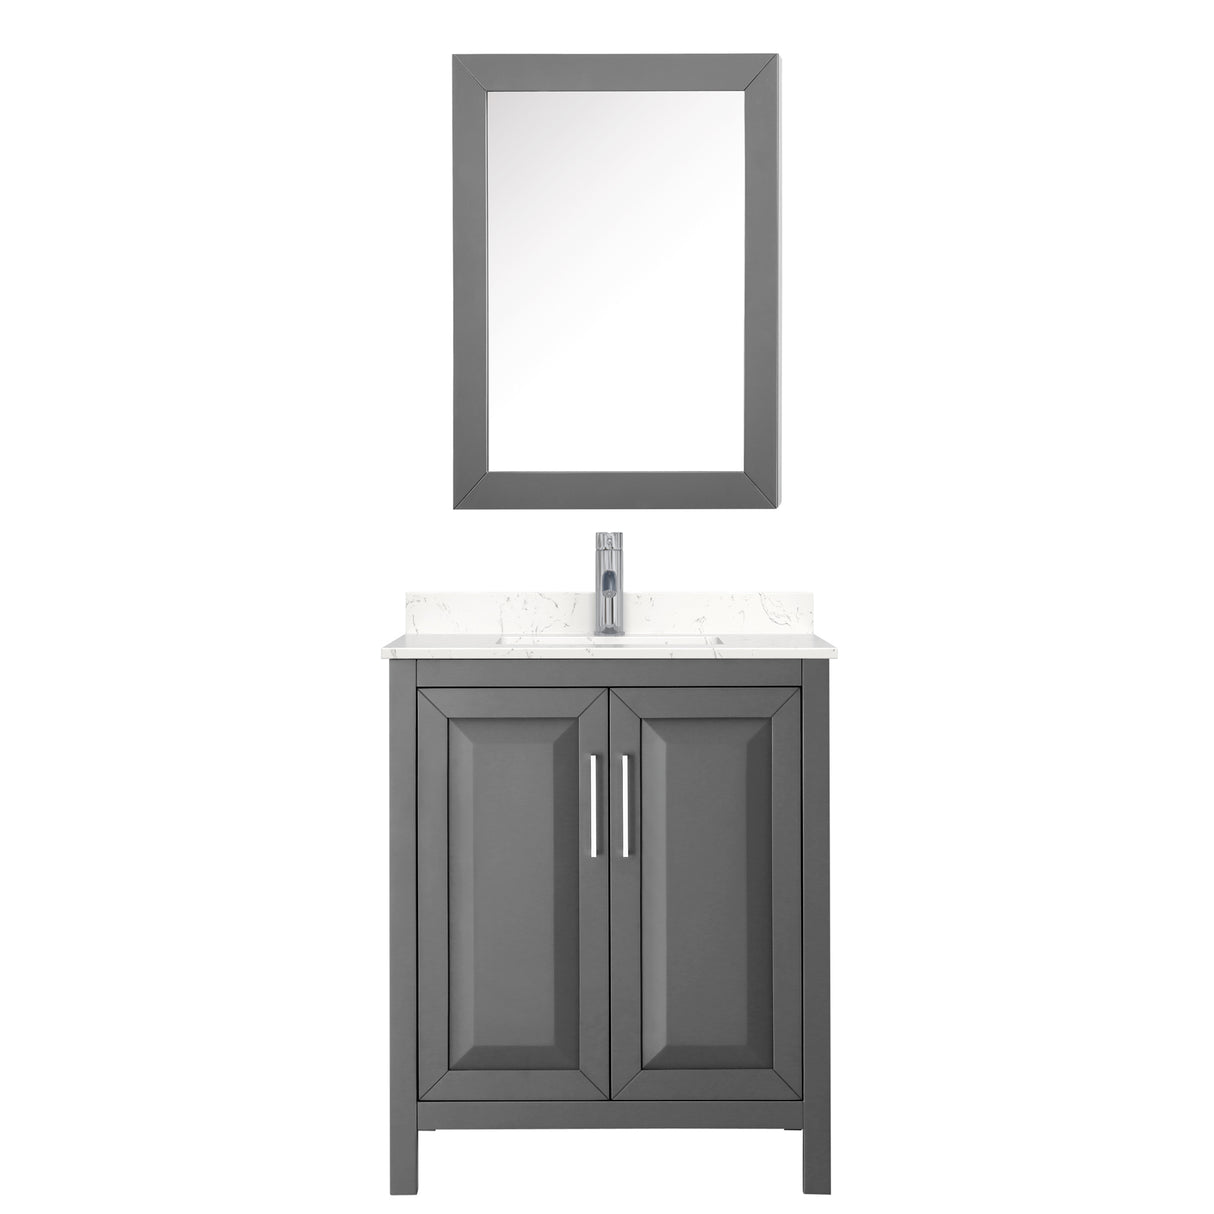 Daria 30 Inch Single Bathroom Vanity in Dark Gray Carrara Cultured Marble Countertop Undermount Square Sink Medicine Cabinet